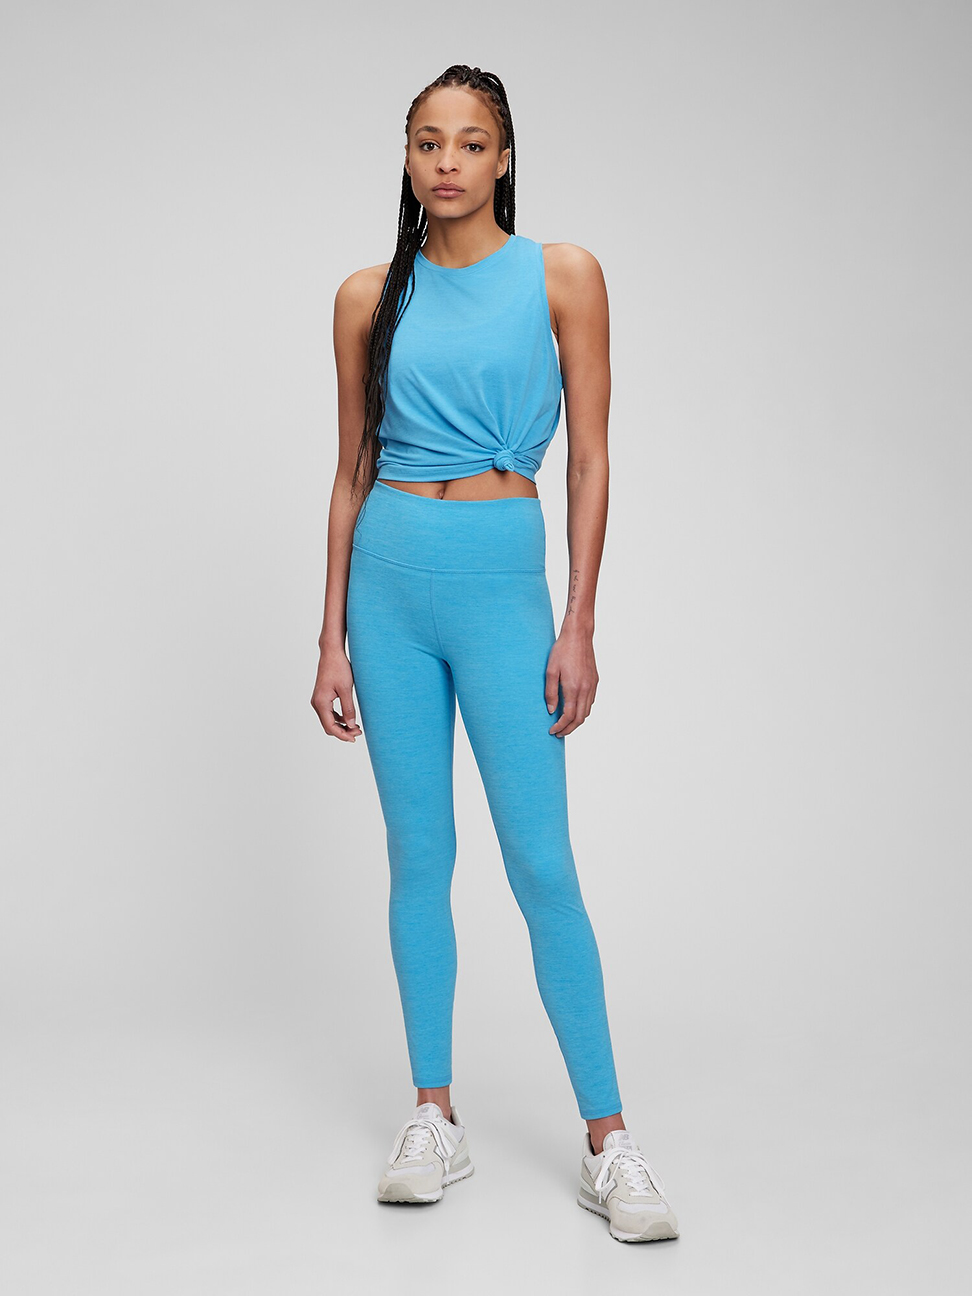 女裝|素色高彈緊身運動褲 GapFit系列-亮藍色